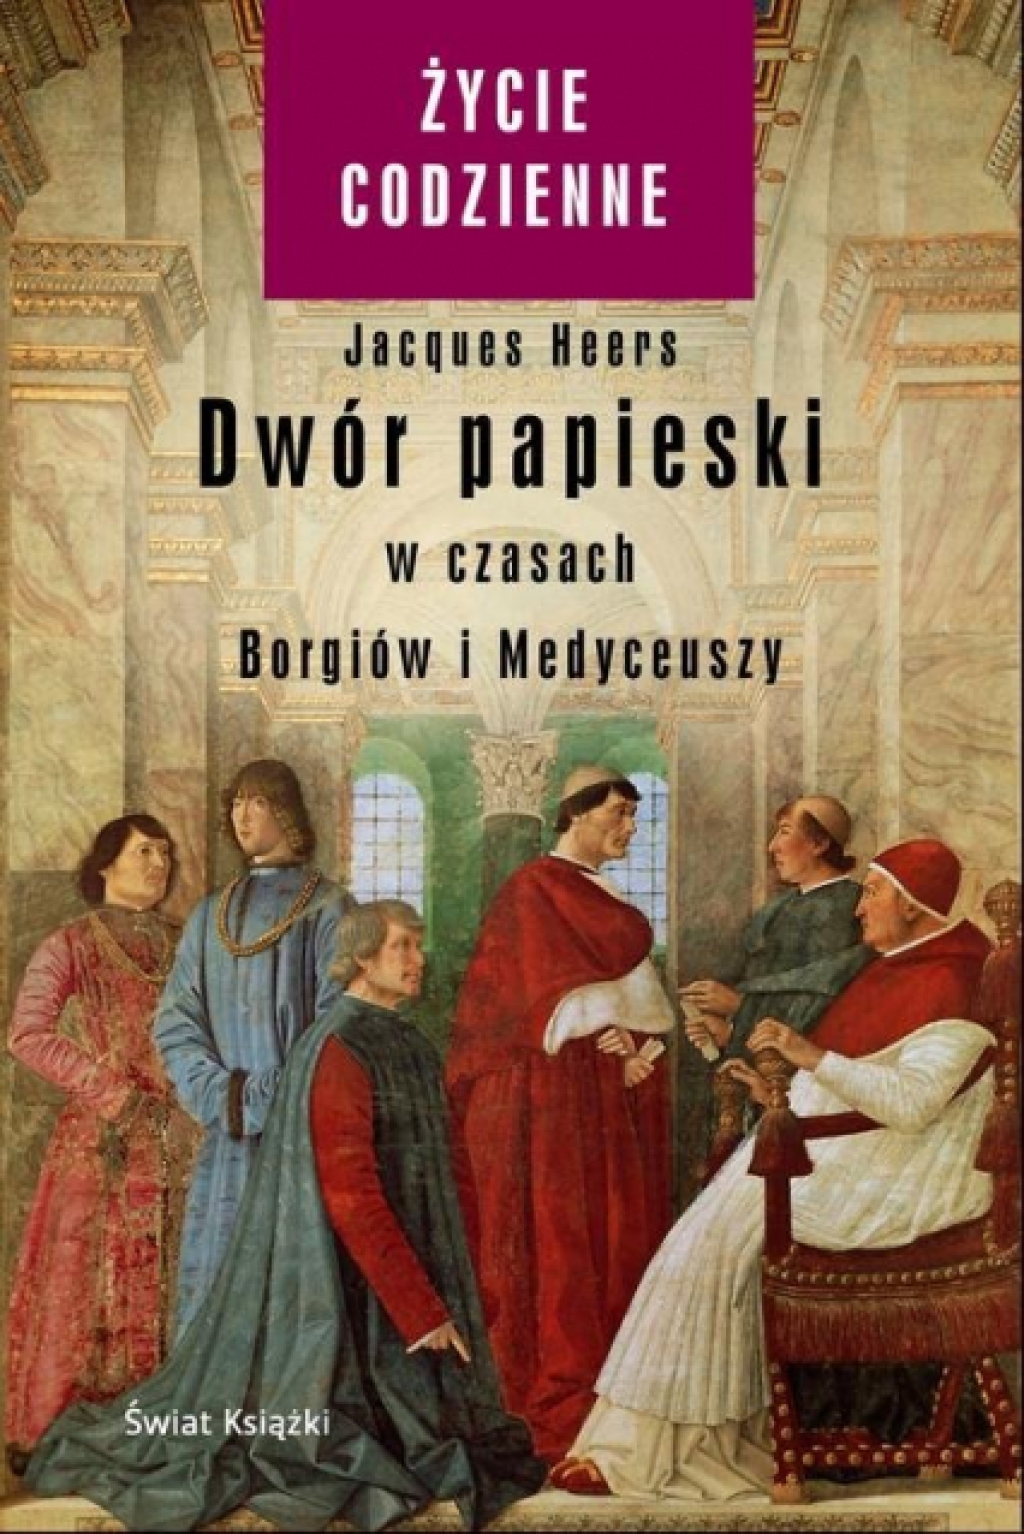 Dwór papieski w czasach Borgiów i Medyceuszy